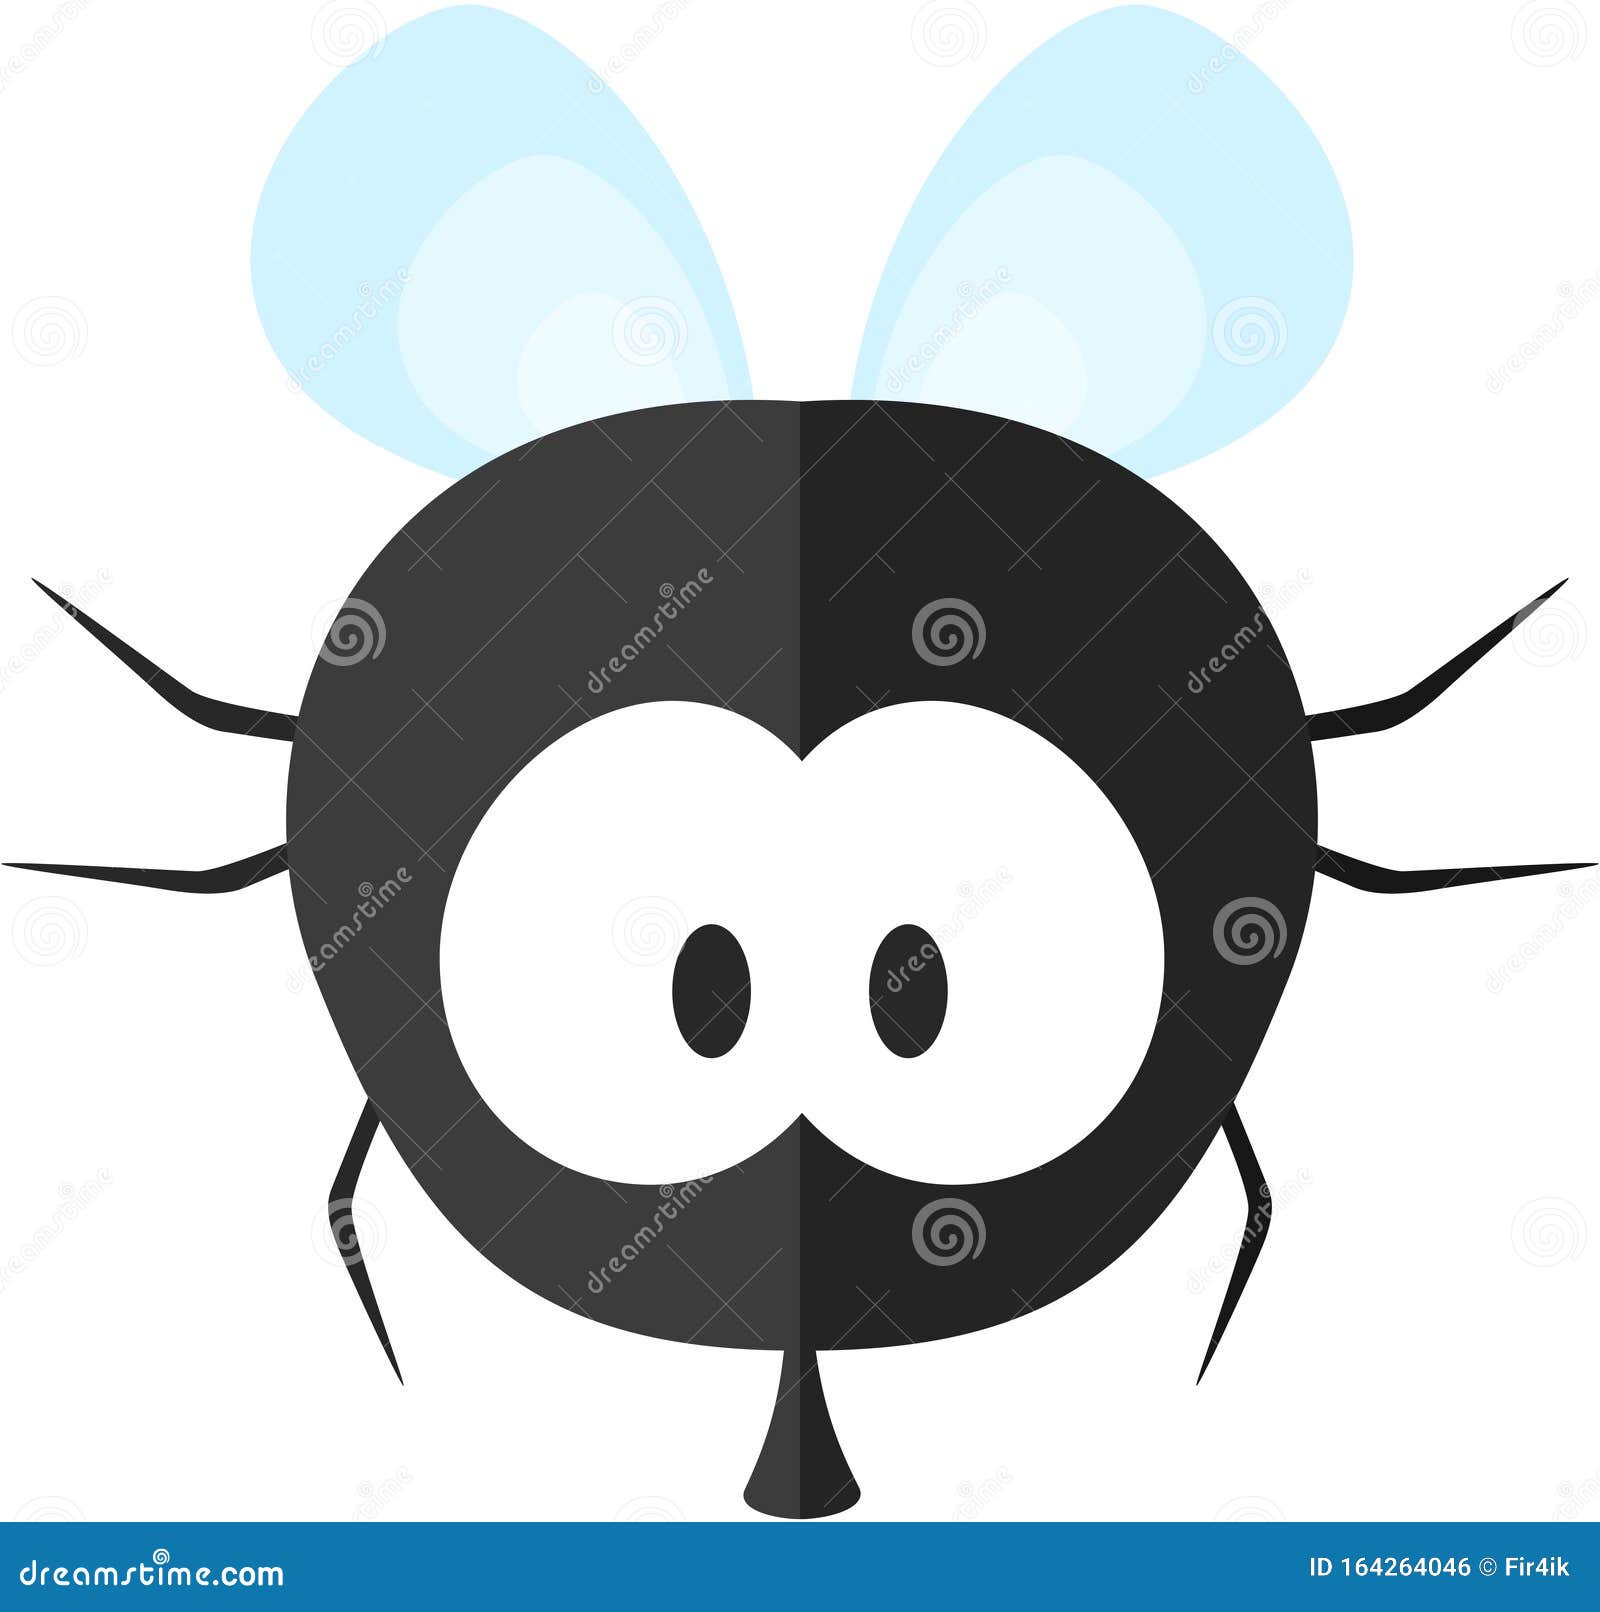 一只苍蝇的卡通风格插图图片免费下载-5043069341-千图网Pro